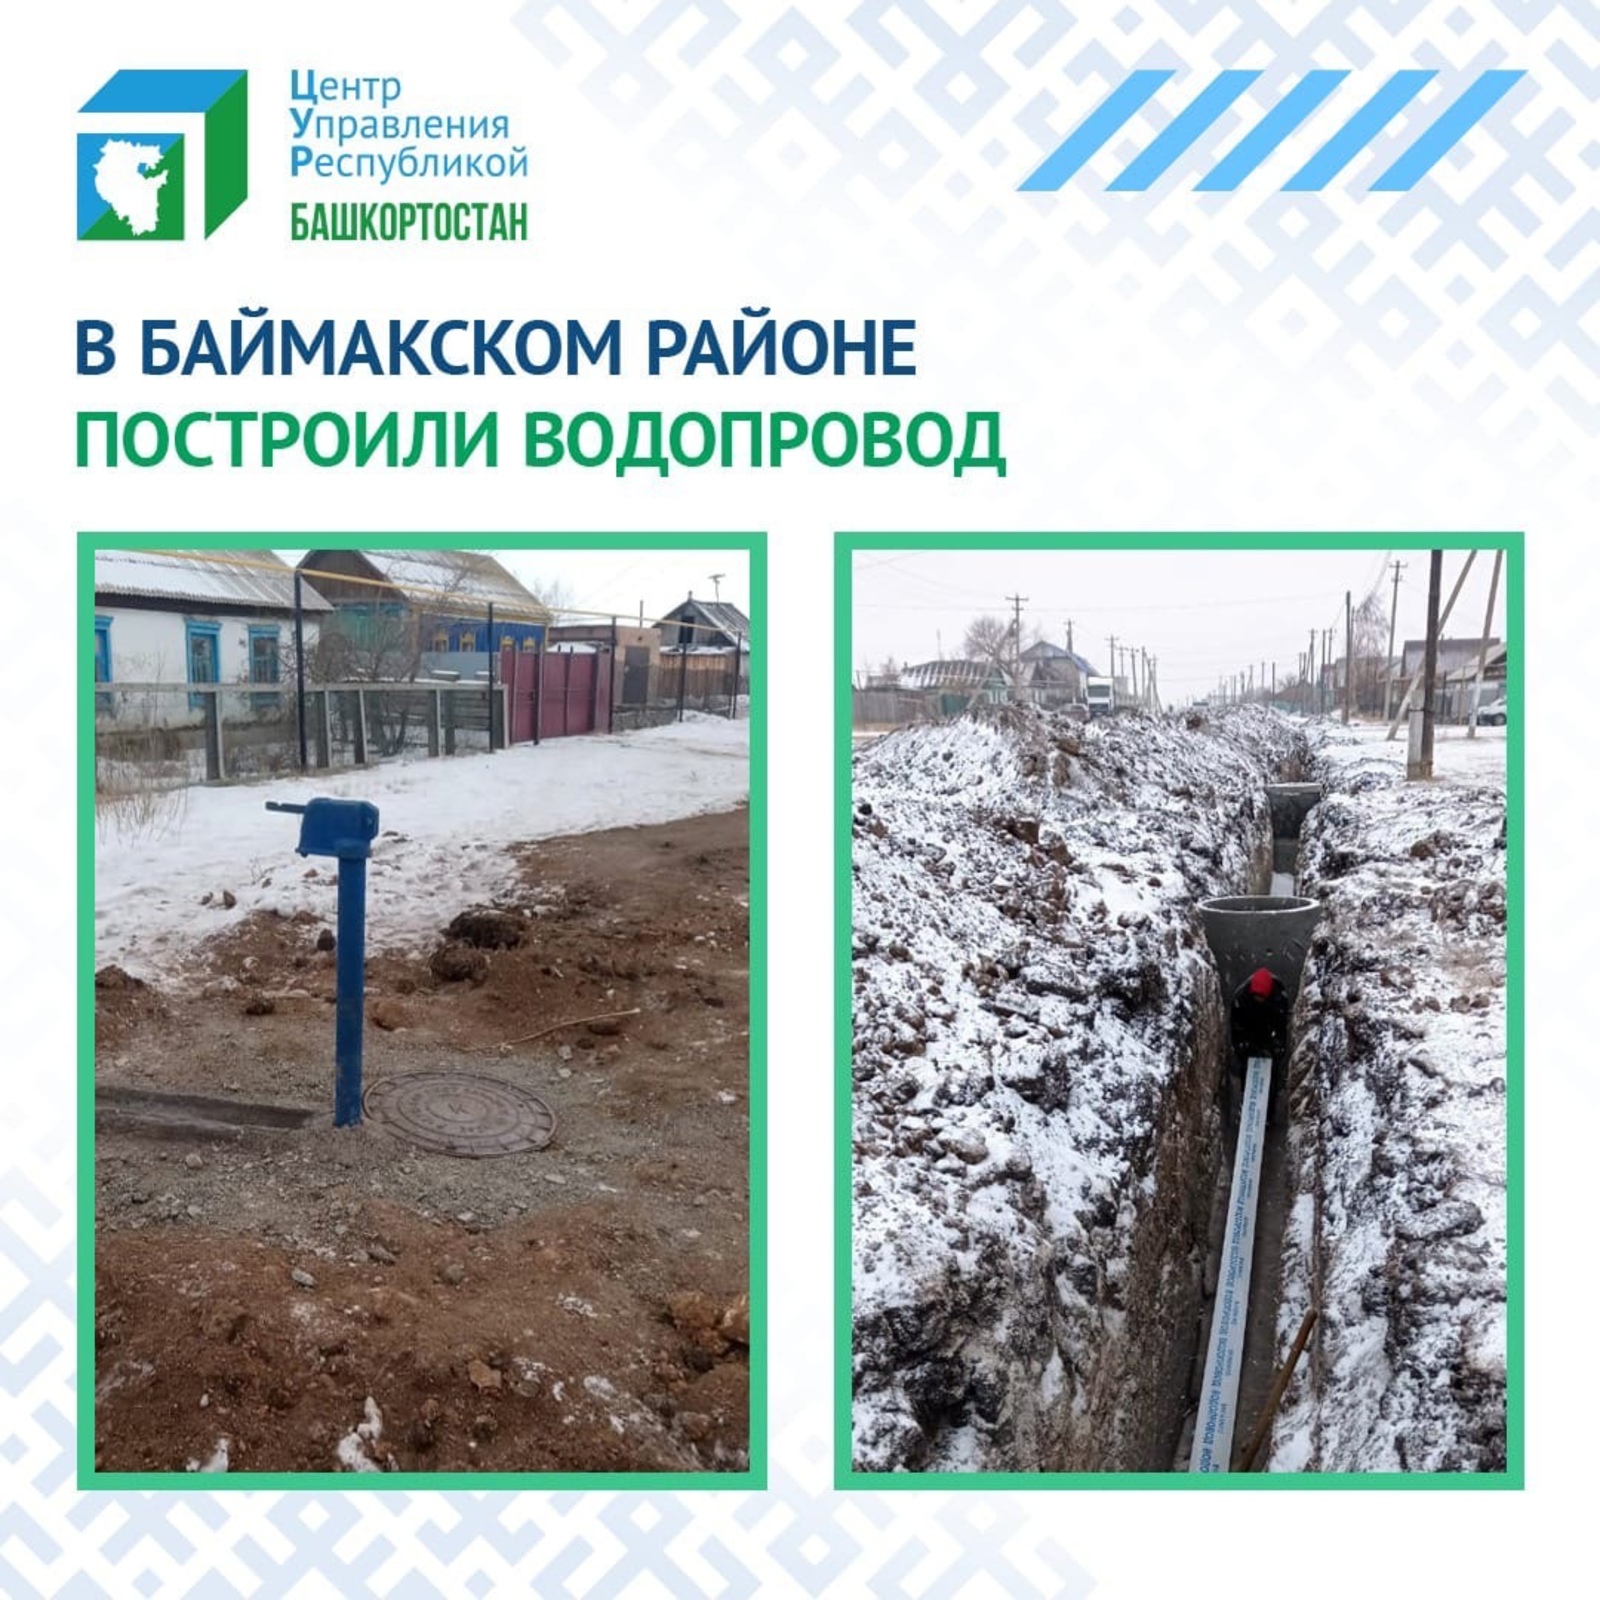 В деревне Казанка Баймакского района построили долгожданный водопровод